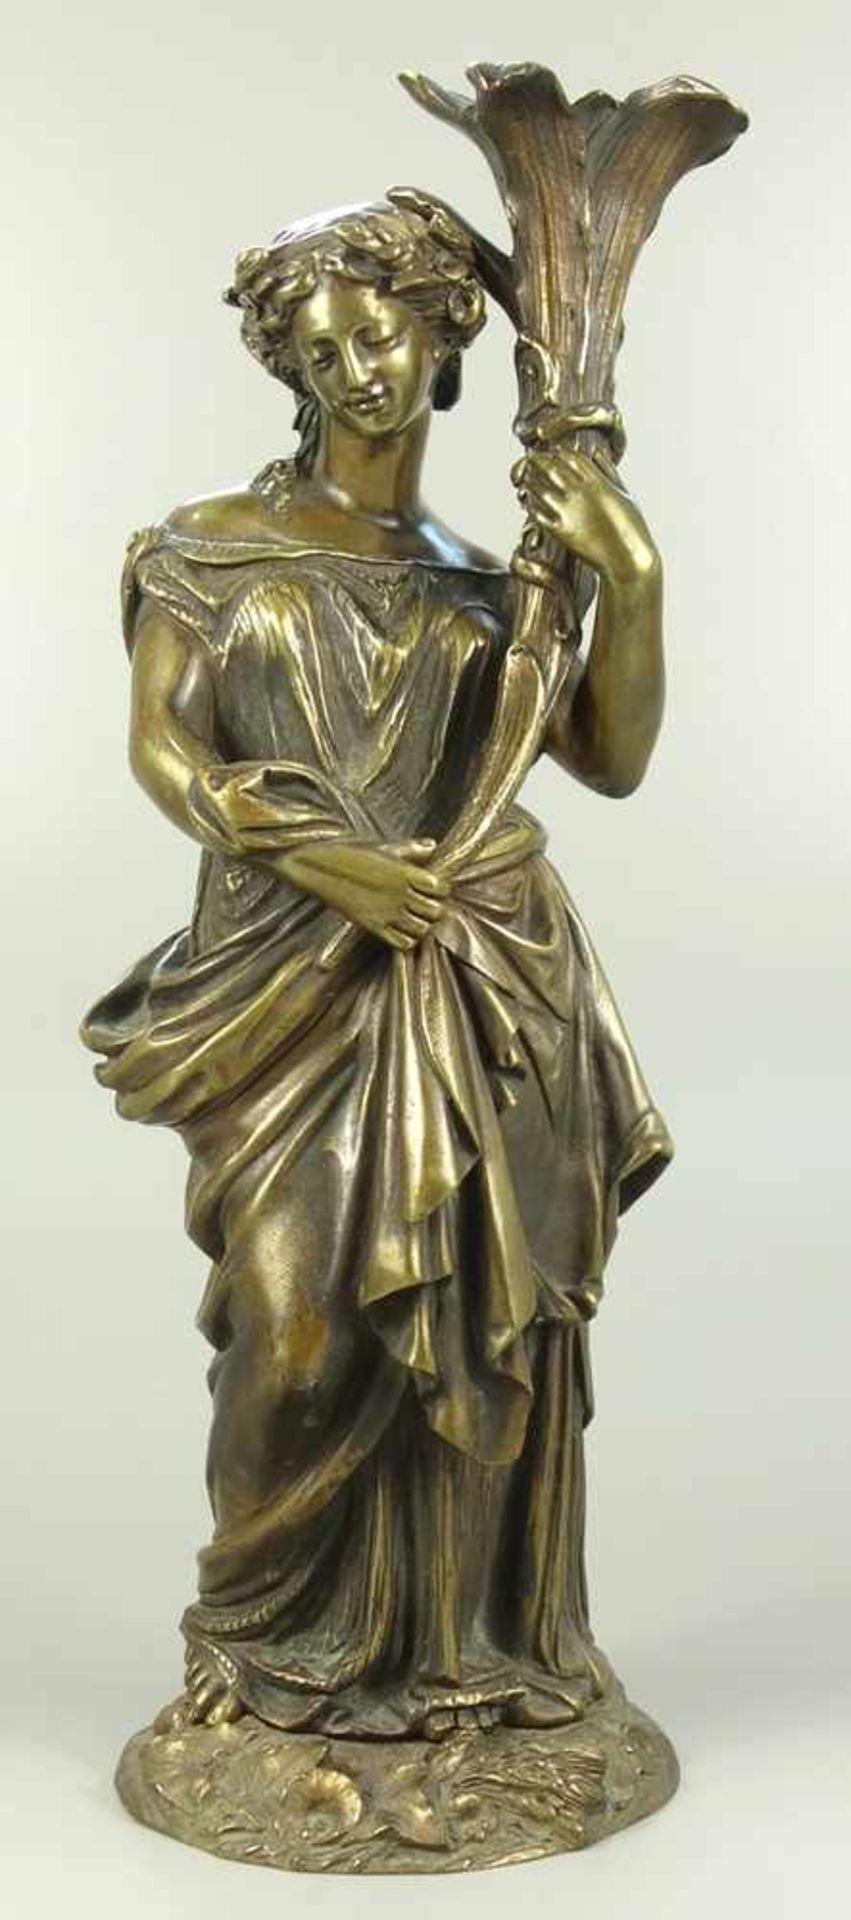 figürlicher Lampenfuß, um 1900, Messing, in antikisierender Kleidung stehende Frau mit Lorbeerkranz,